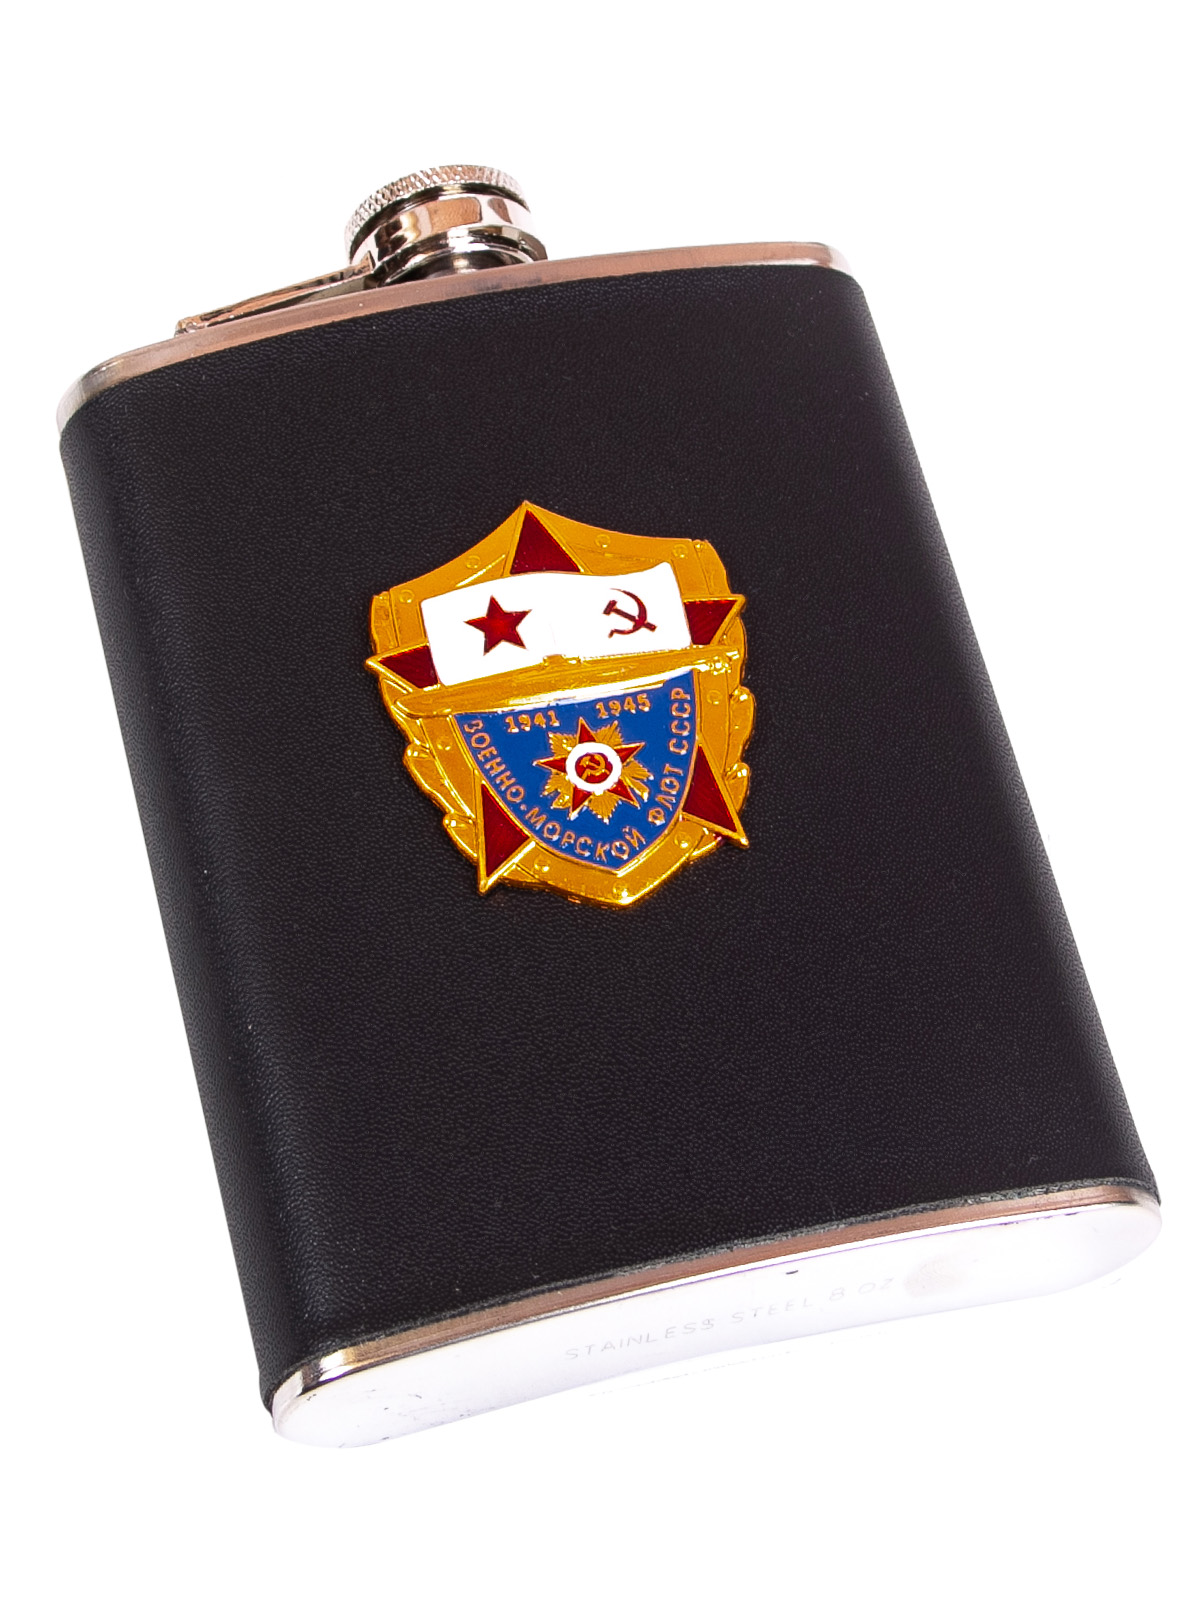 Подарочная фляжка с накладкой "ВМФ СССР 1941-1945" 